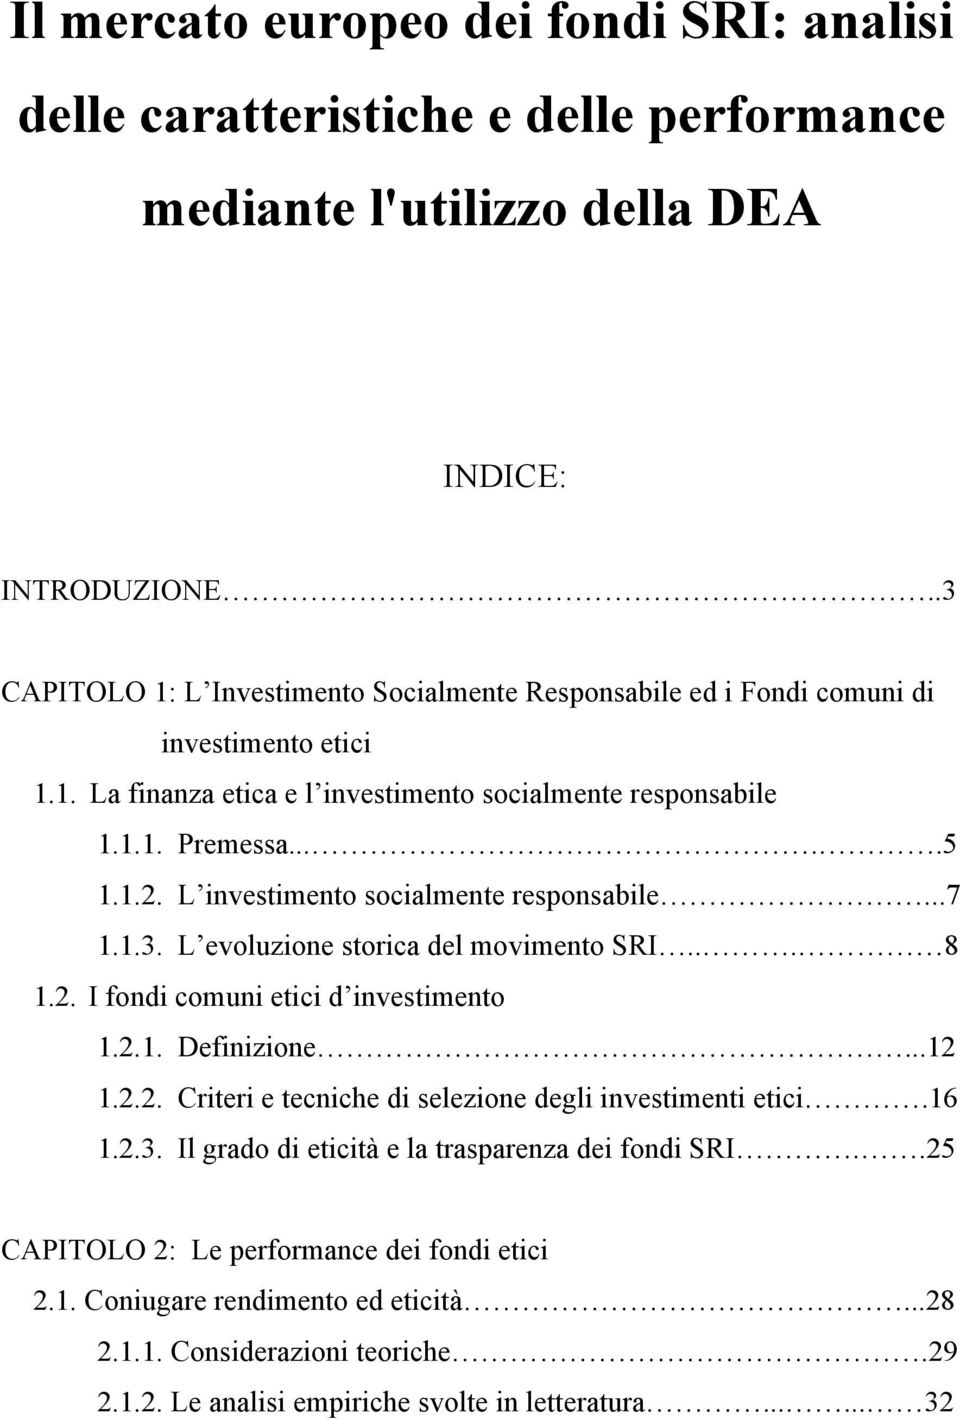 L investimento socialmente responsabile...7 1.1.3. L evoluzione storica del movimento SRI... 8 1.2. I fondi comuni etici d investimento 1.2.1. Definizione...12 1.2.2. Criteri e tecniche di selezione degli investimenti etici.